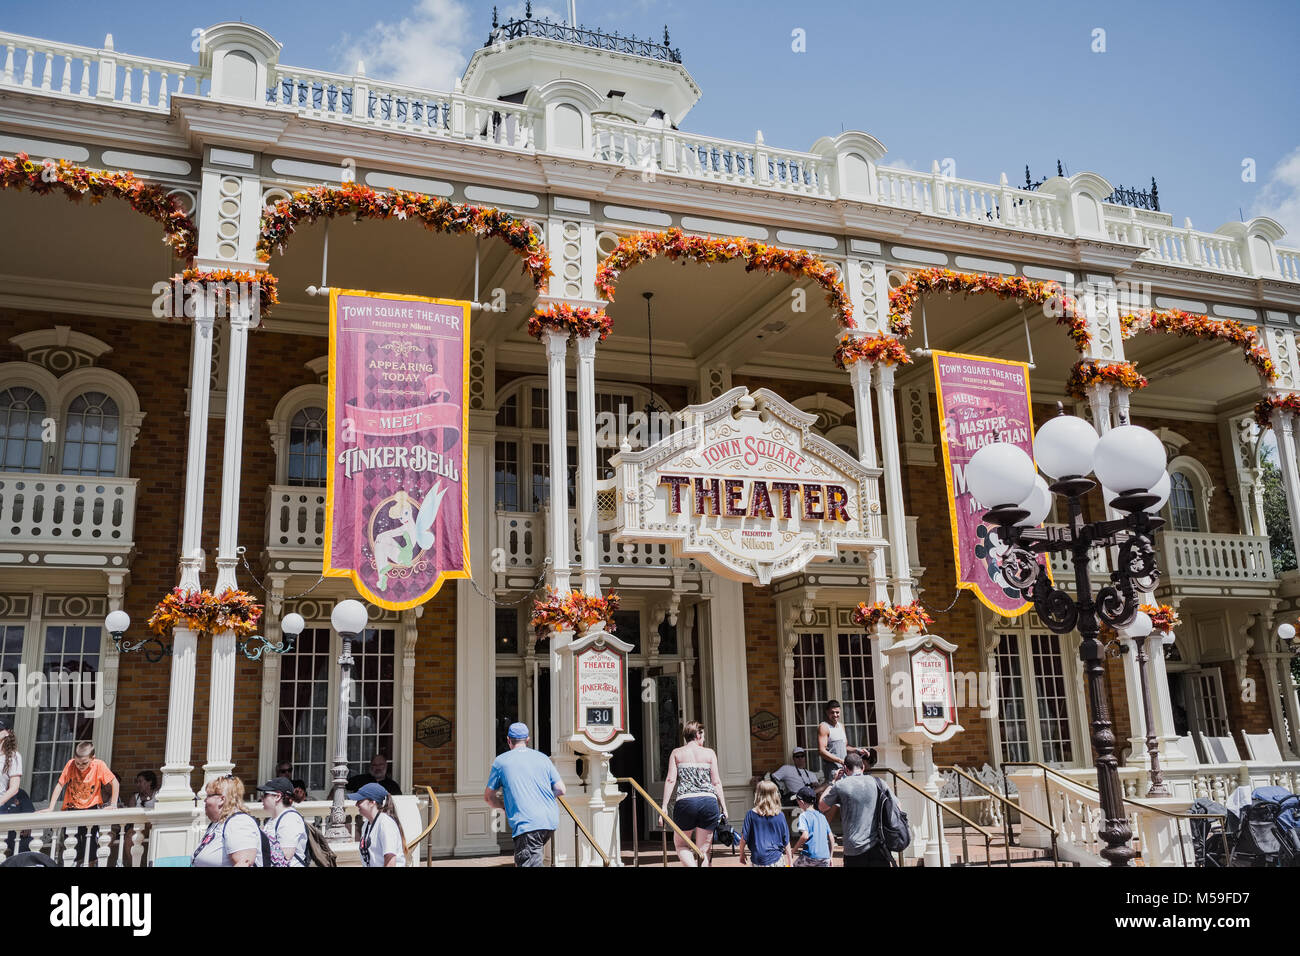 Town Square Theatre au Royaume Magique de Disney World, Orlando, Floride, en Amérique du Nord Banque D'Images